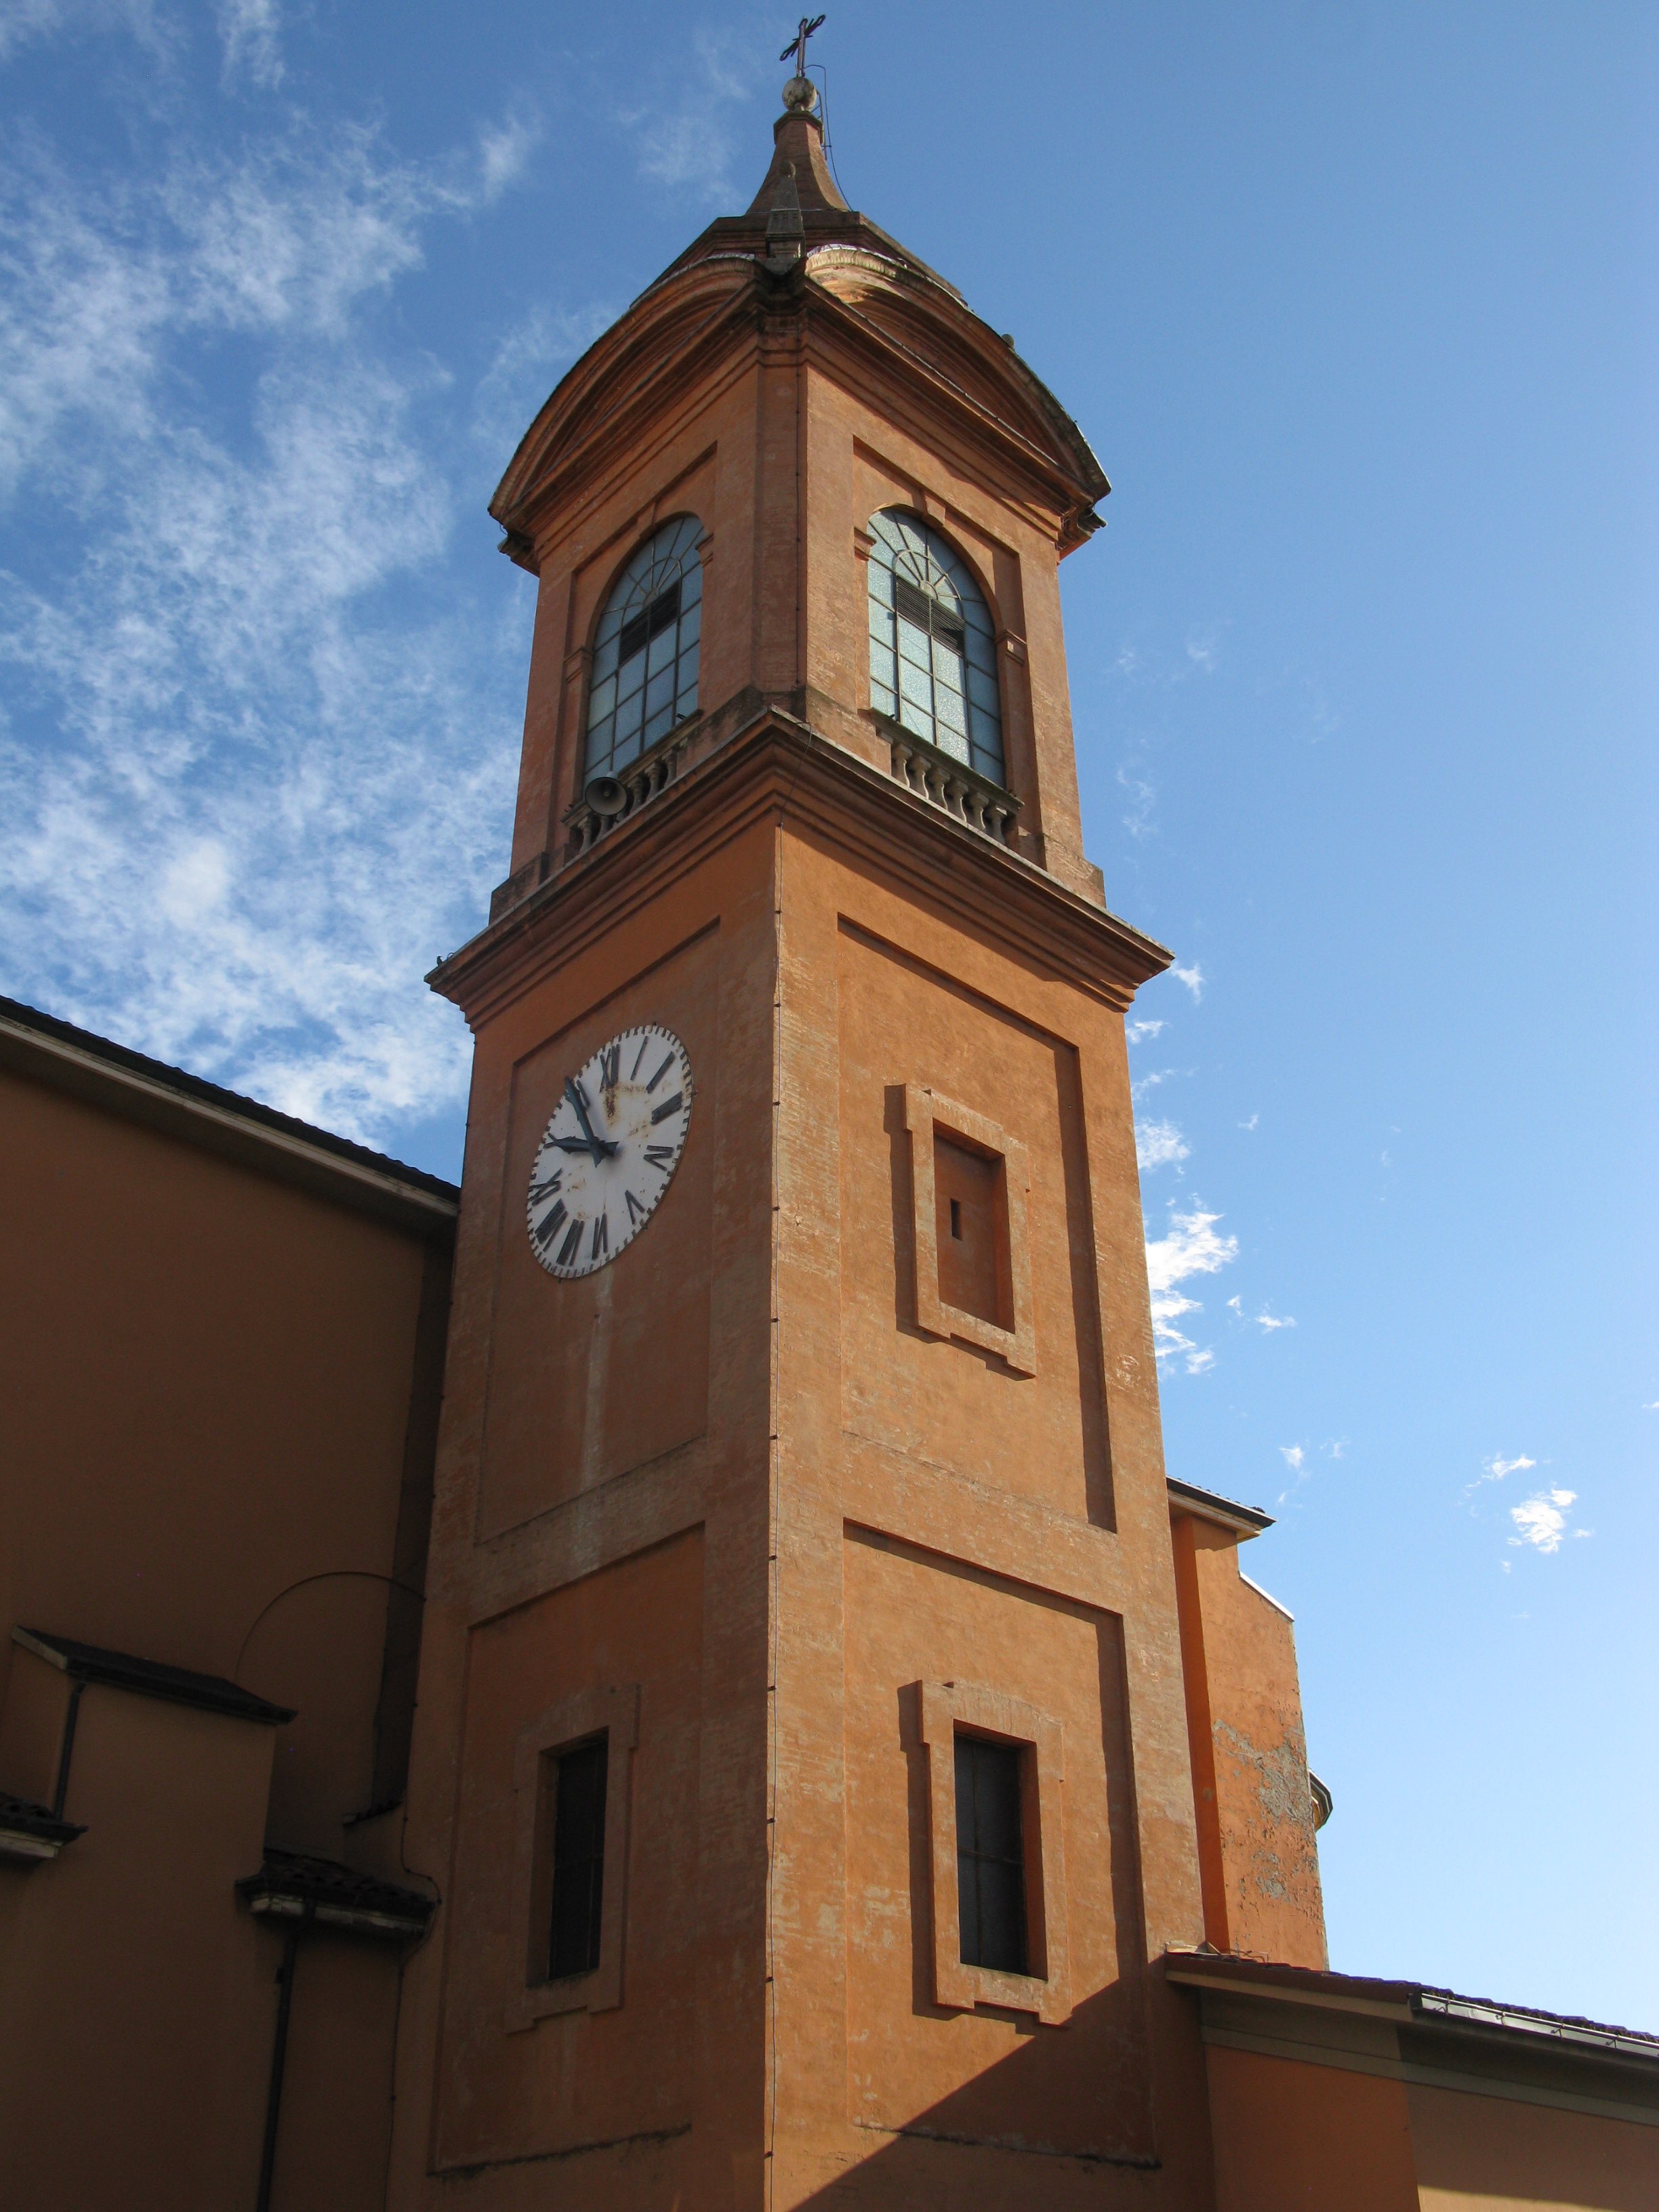 Campanile Chiesa di S. Ruffillo Vescovo di Forlimpopoli (campanile) - Bologna (BO) 